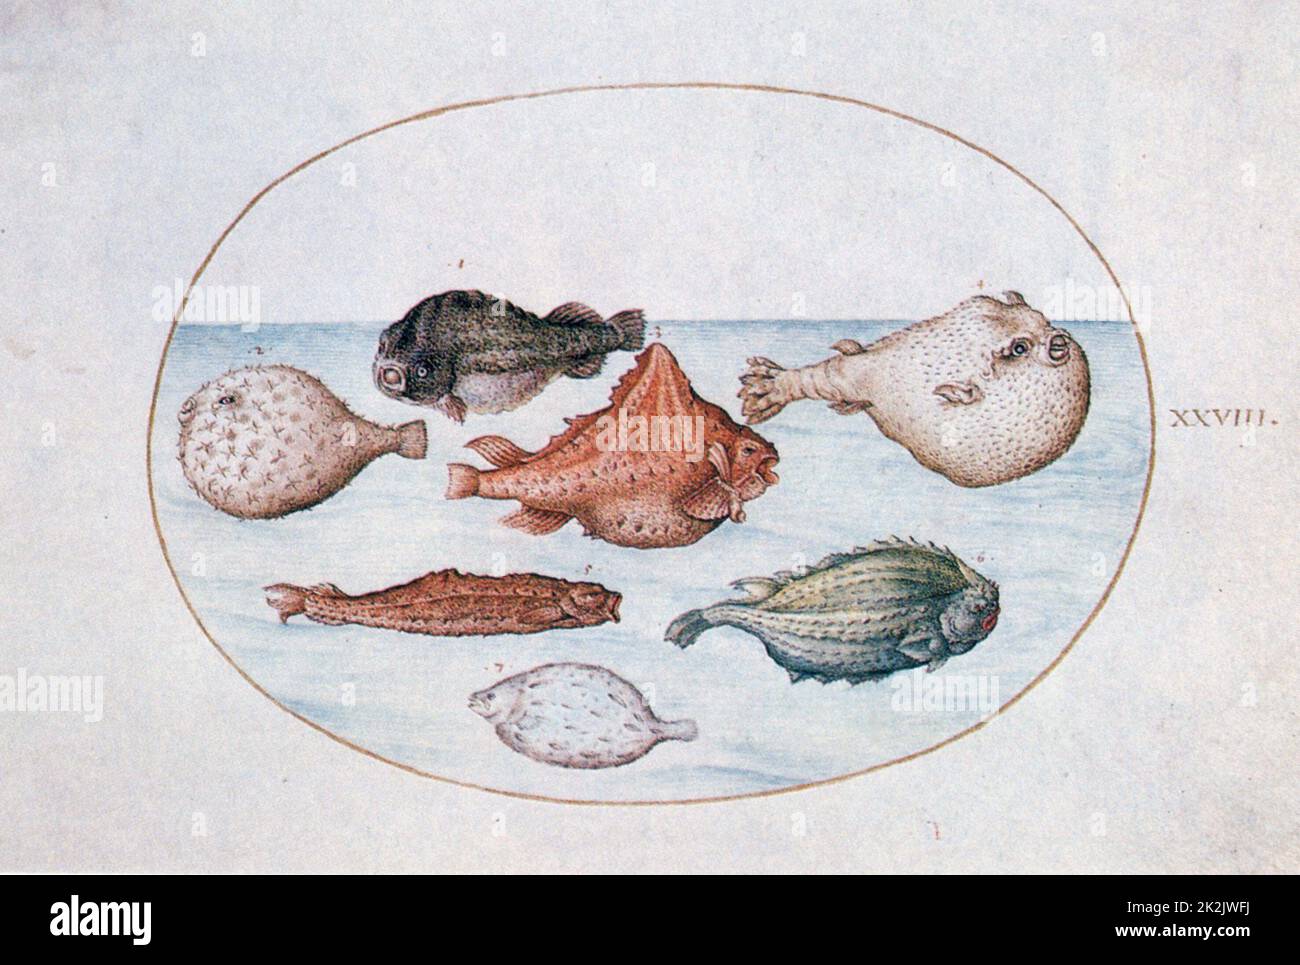 Joris Hoefnagel Ecole flamande poisson 16th siècle une illustration du manuscrit calligraphique 'mira Callichiae Monumenta', inscrit par Georg Bocskay et illuminé par Joris Hoefnagel. Banque D'Images